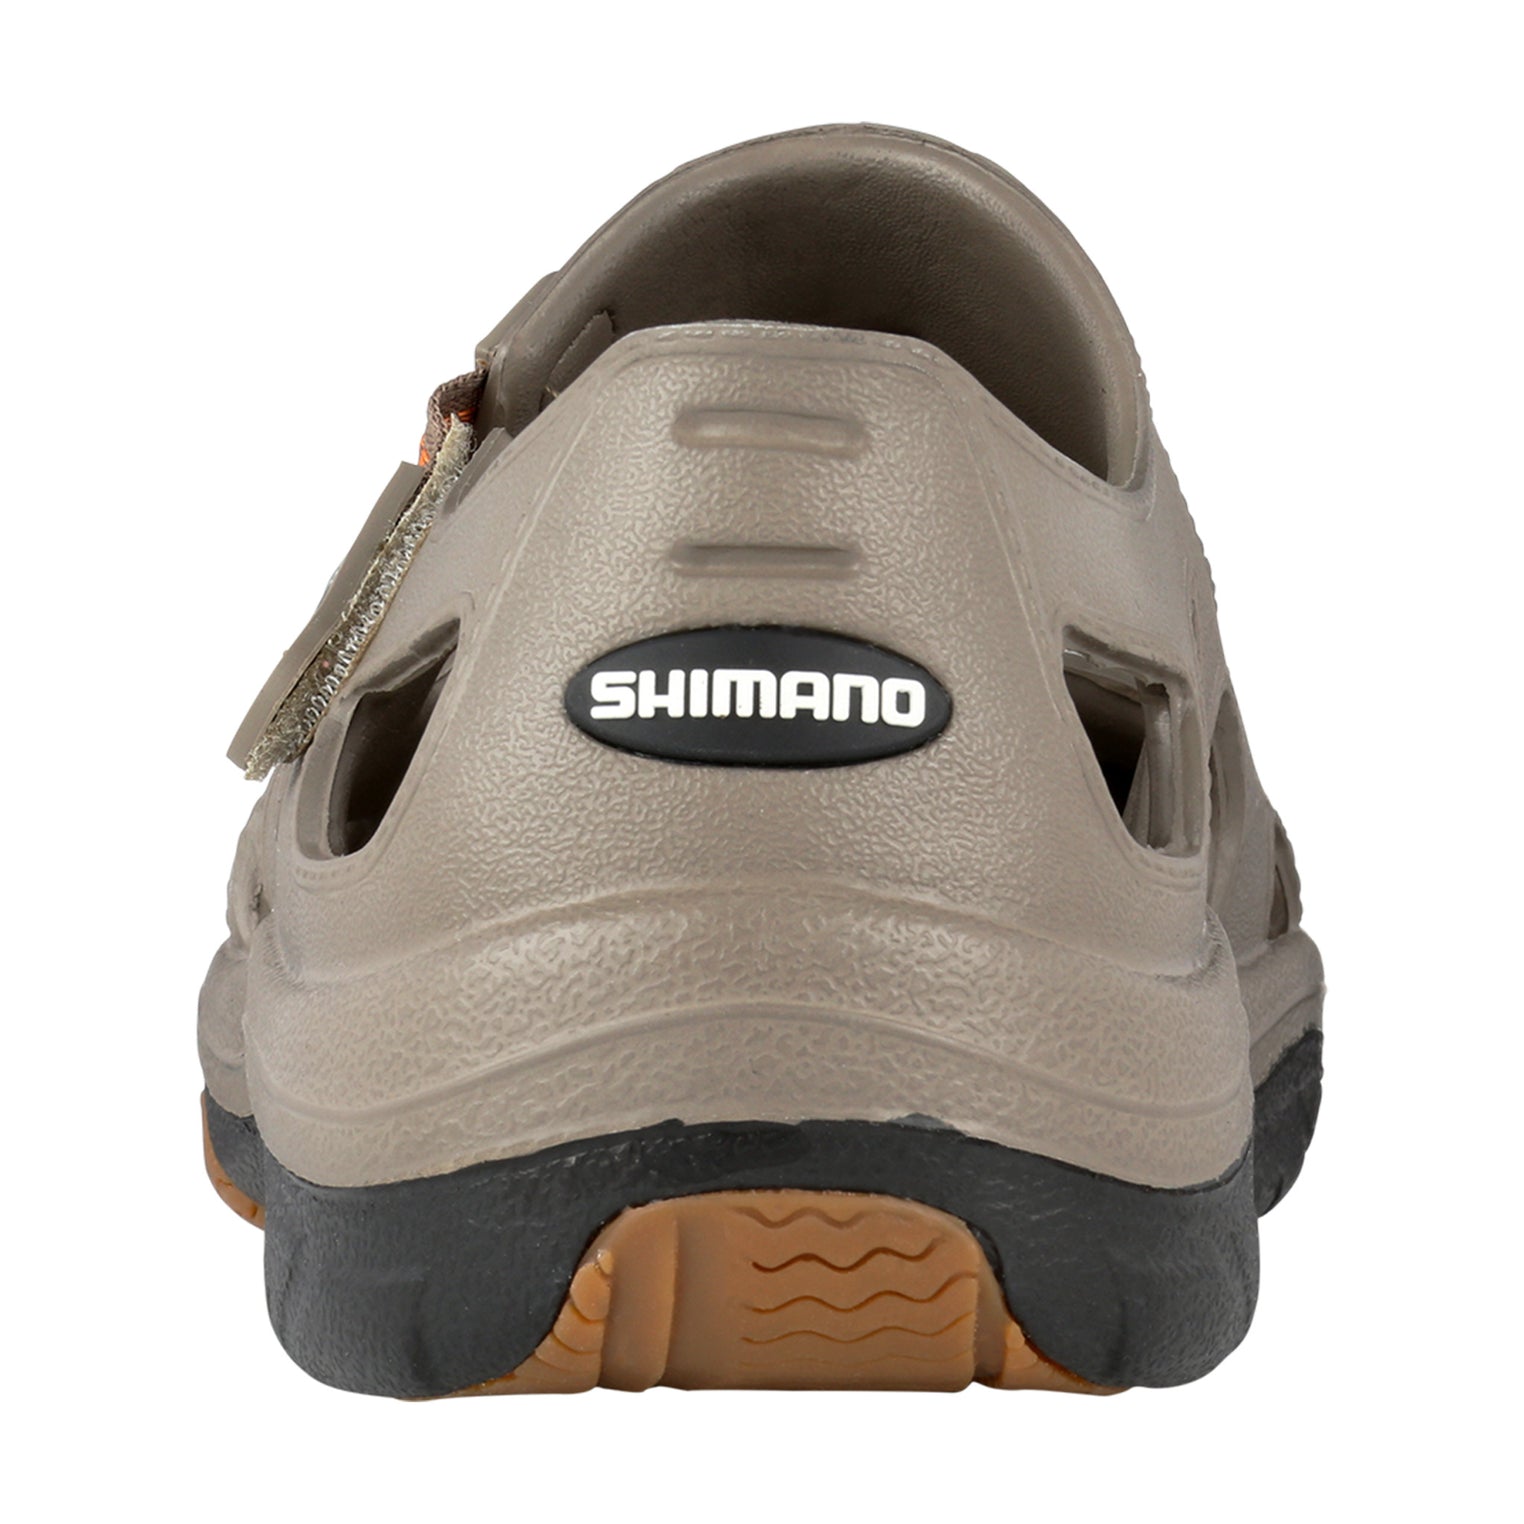 SIZE 5,6,7,8) SHIMANO evair marine Fishing Shoes / Kasut pancing